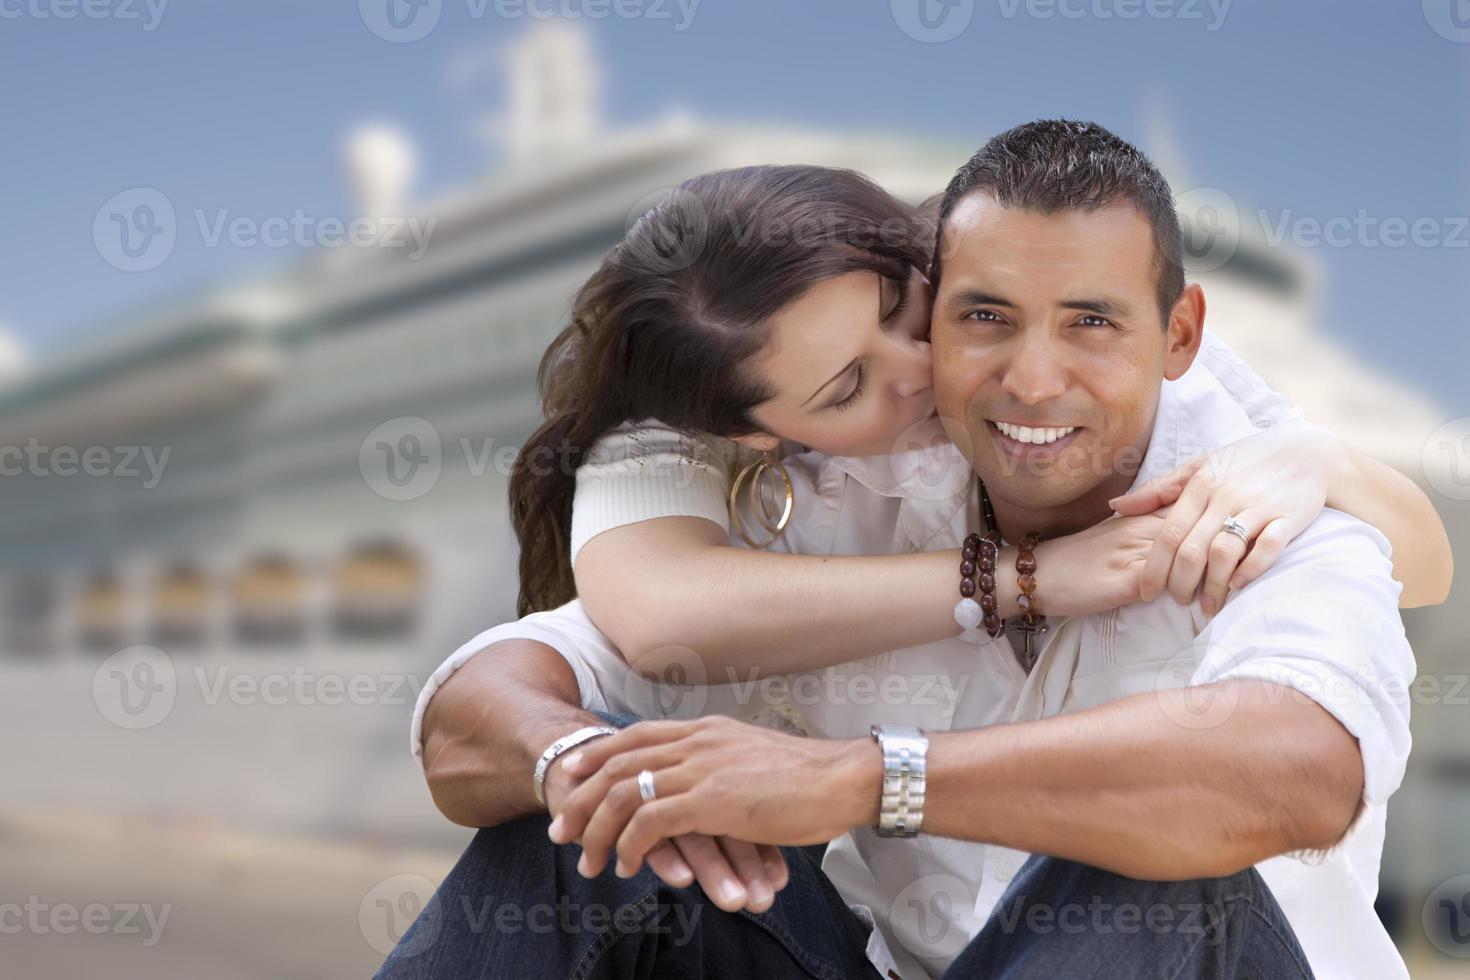 jong gelukkig spaans paar in voorkant van reis schip foto